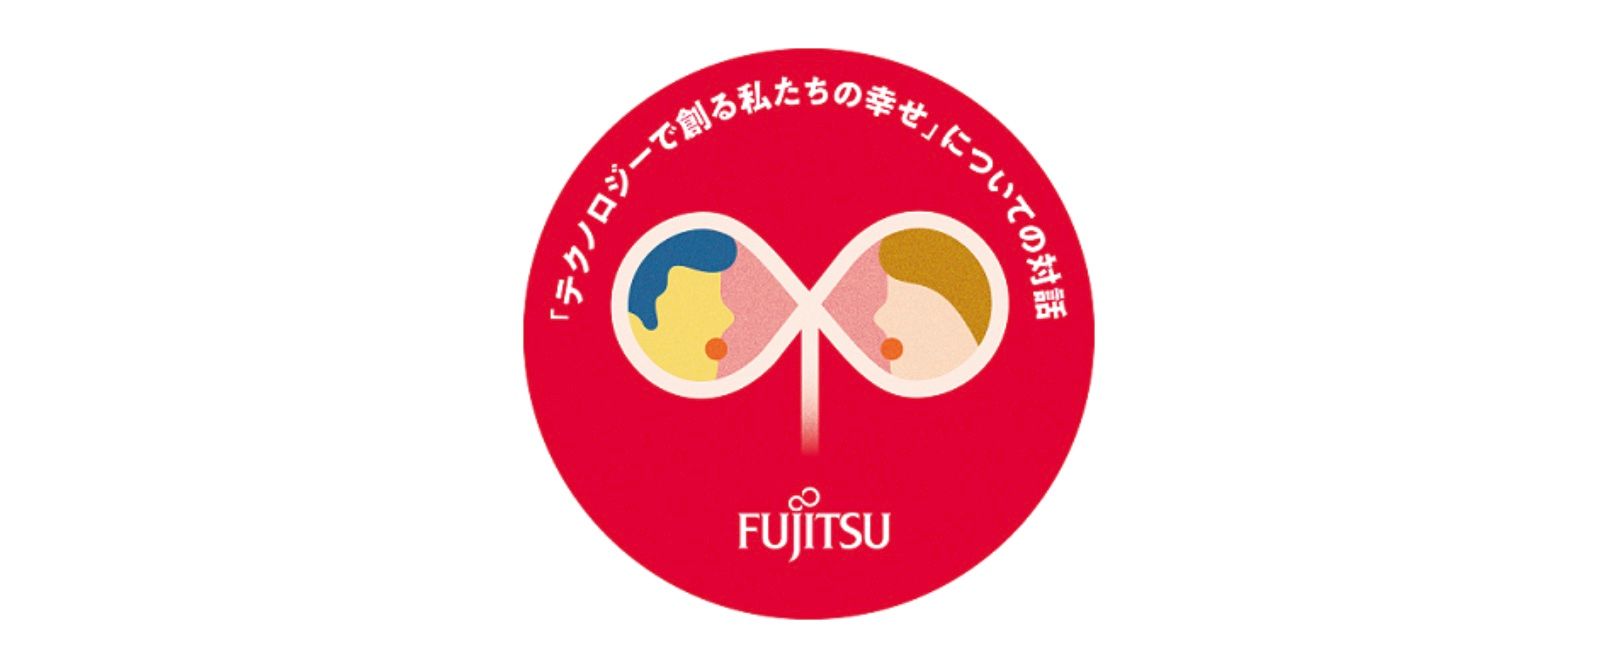 Fujitsu participa em atividades para ouvir as vozes das gerações futuras, a fim de promover o bem-estar social no Japão